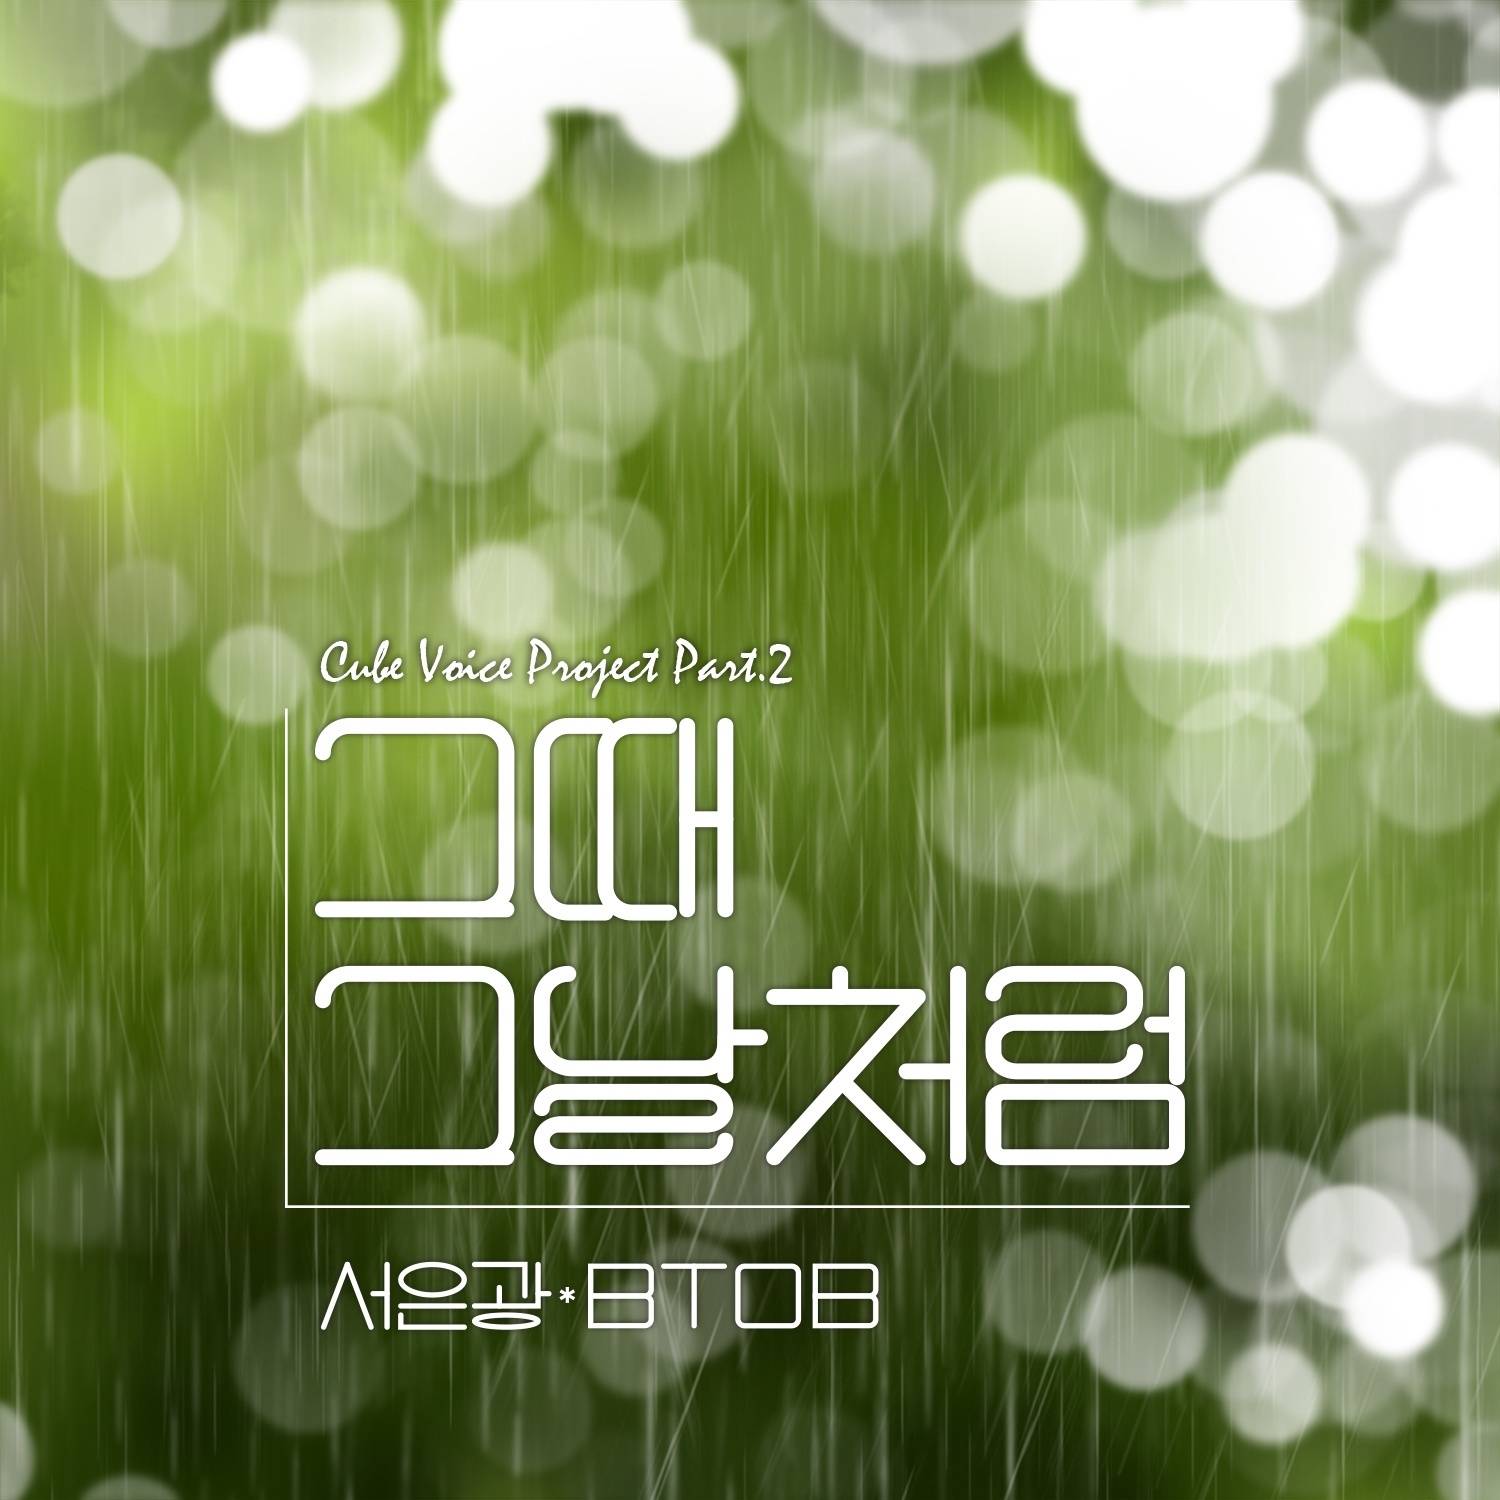 3일(화), BTOB 서은광 큐브 보이스 프로젝트 Vol.2 '그때 그 날 처럼' 발매 예정 | 인스티즈